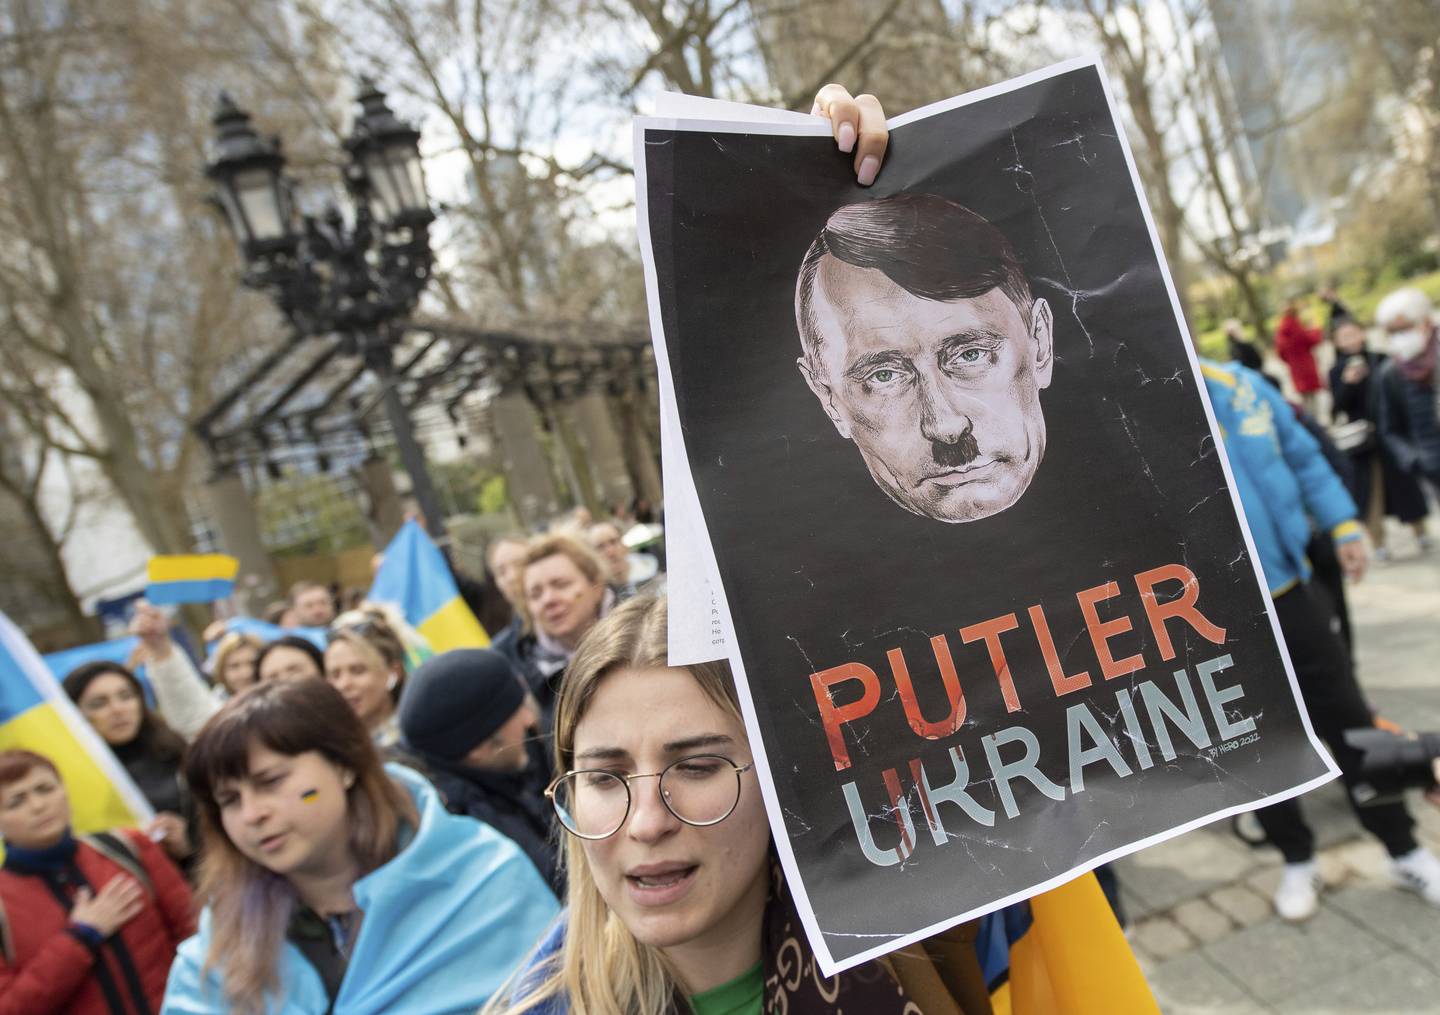 Det ble også arrangert motdemonstrasjoner til støtte for Ukraina i Frankfurt søndag. Tyskland huser om lag 1,2 millioner mennesker med russisk bakgrunn, og 325.000 med ukrainsk bakgrunn.
Foto: Boris Roessler / dpa via AP / NTB